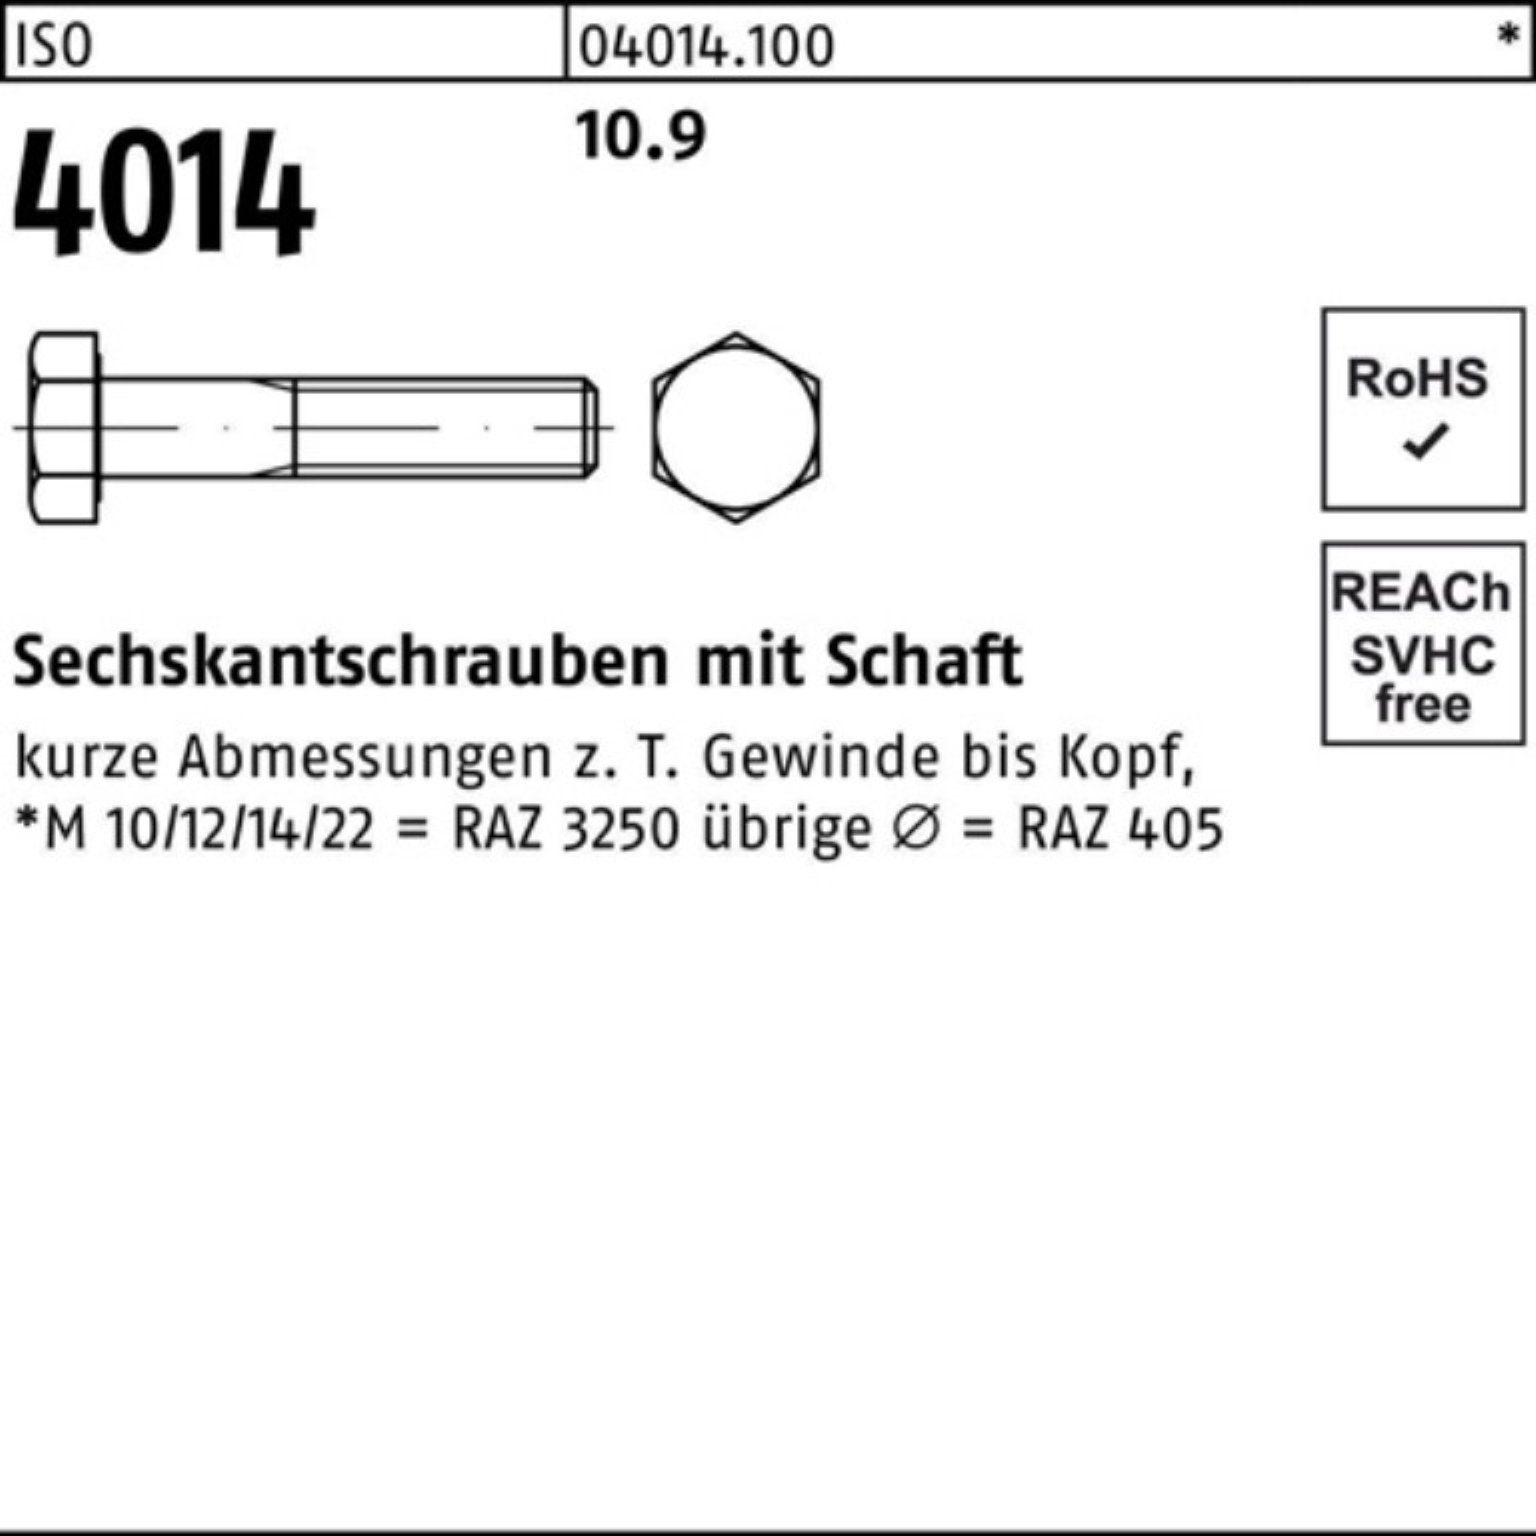 Sechskantschraube Pack 1 4014 Stück IS ISO Schaft M36x 10.9 100er Sechskantschraube Bufab 400